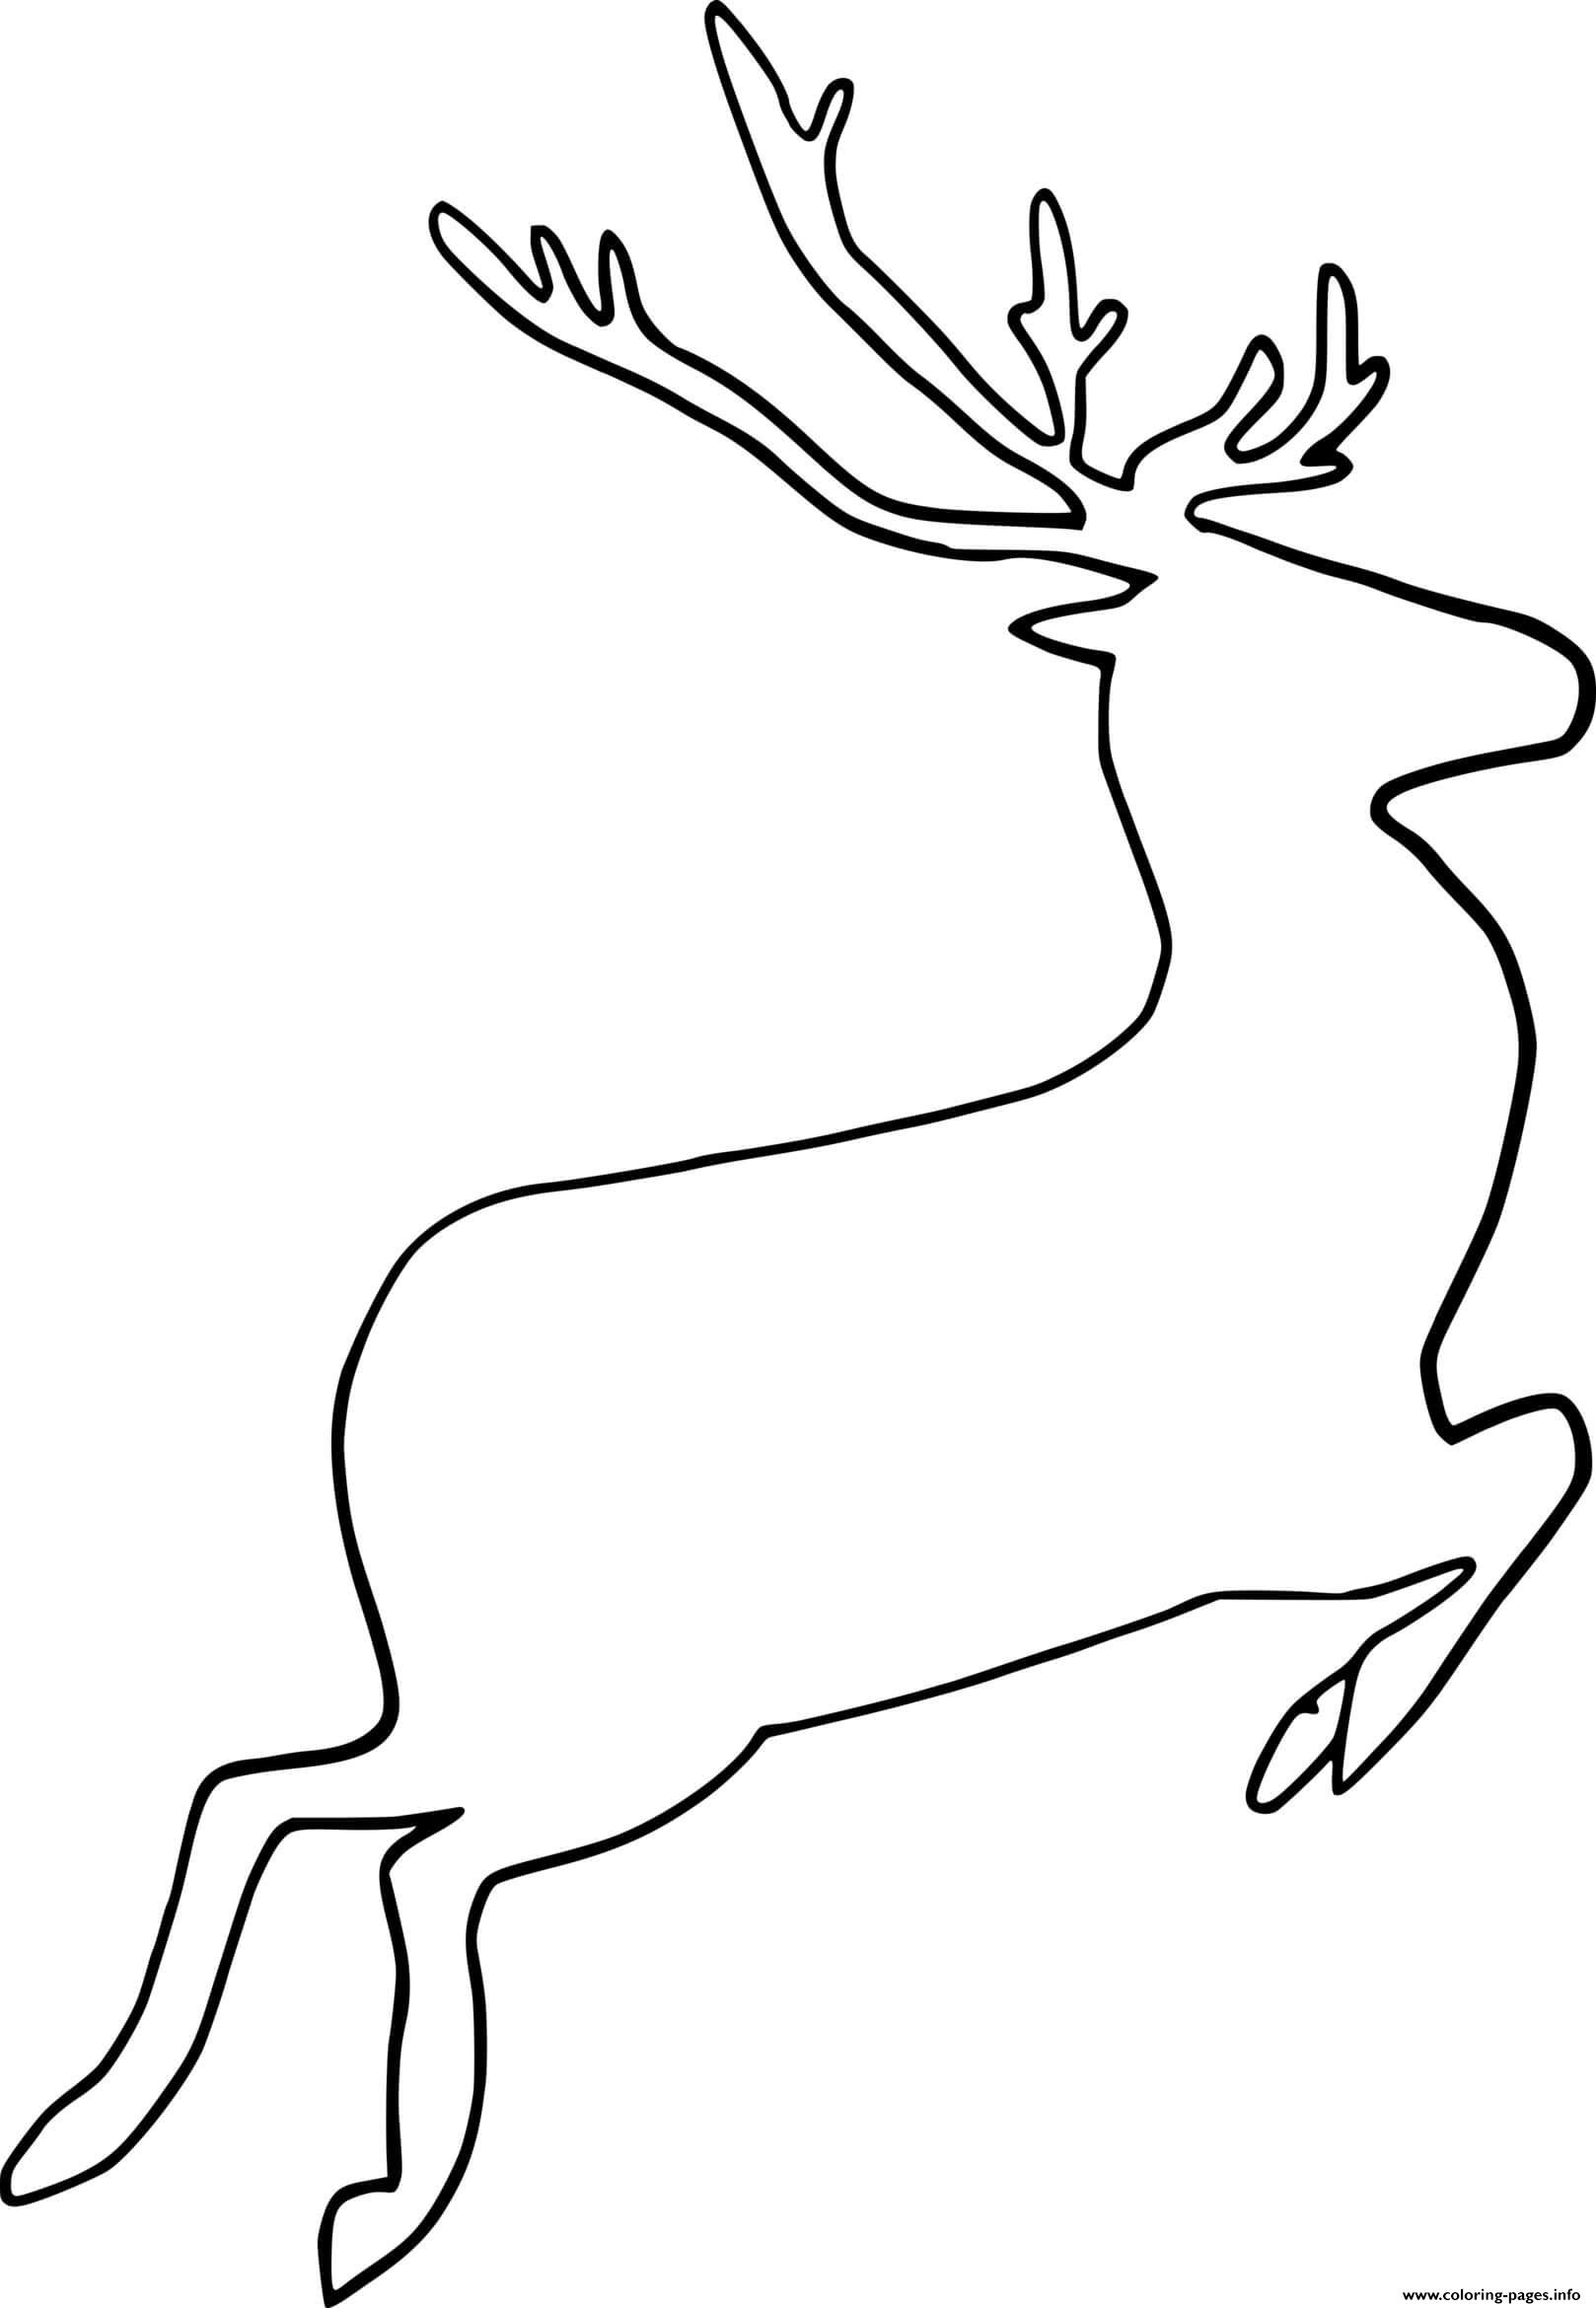 Blank Reindeer coloring